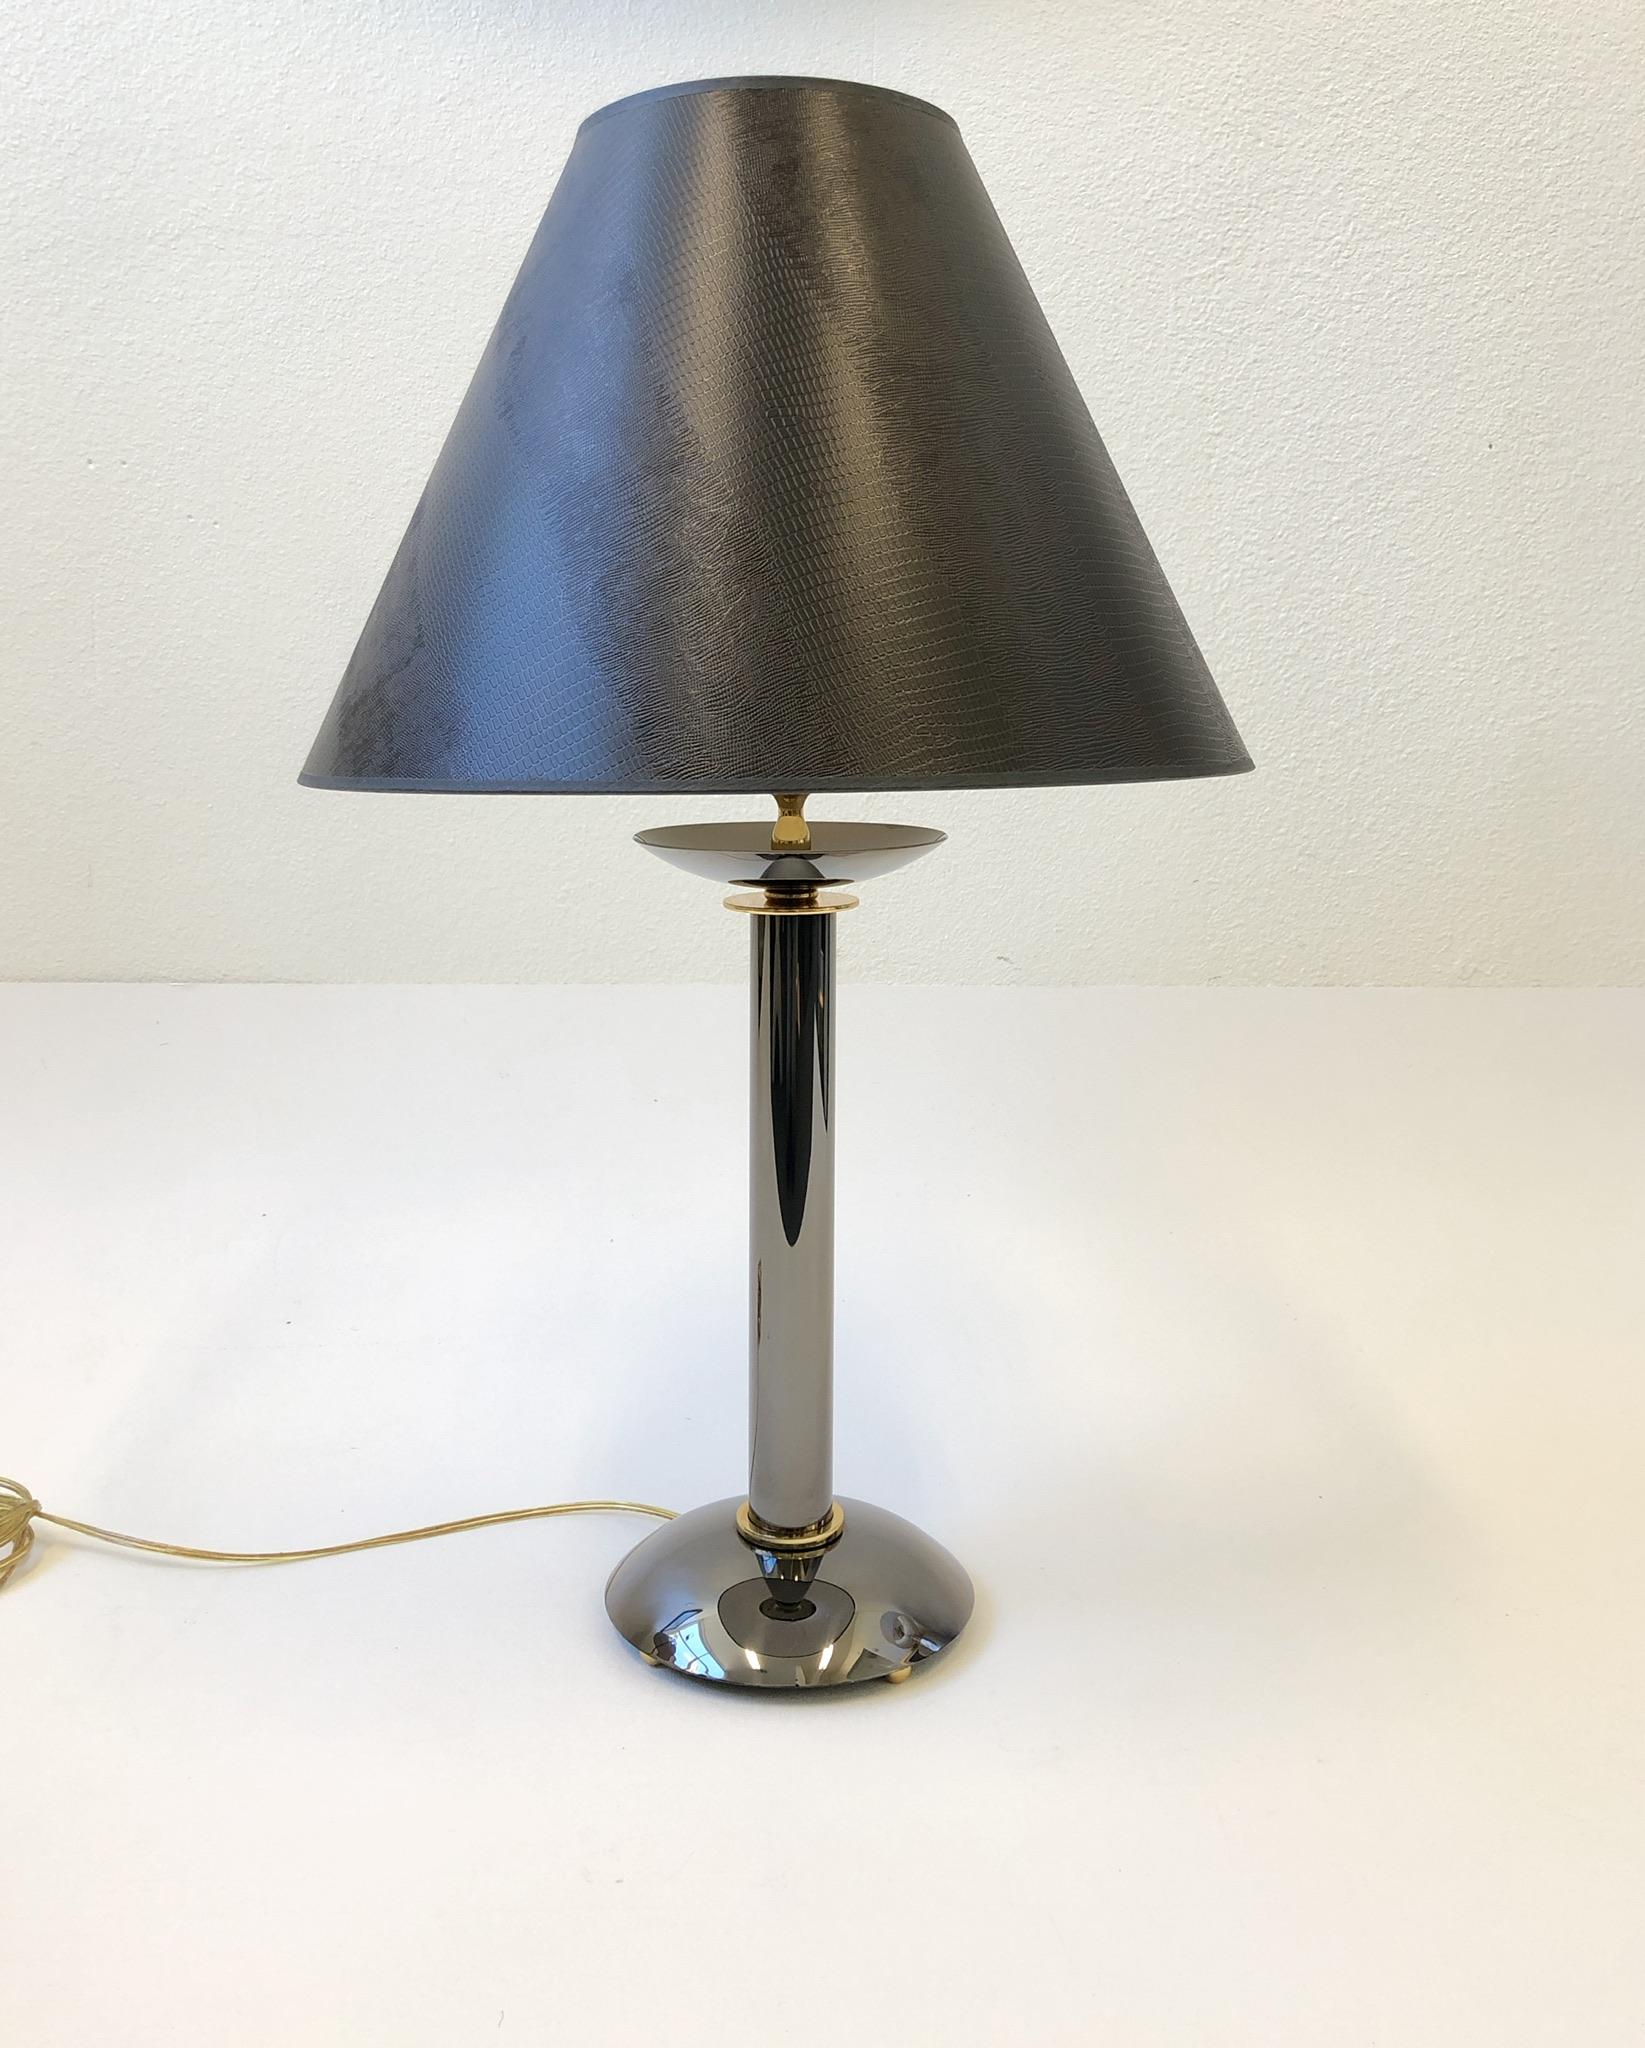 Ein seltenes Paar Tischlampen aus Rotguss und Messing, entworfen von Karl Pringer in den 1980er Jahren. Selten findet man sie als Lampen, meist sind es Kerzenständer. Sie wurden neu verkabelt und mit neuen Beschlägen und neuen dunkelbraunen